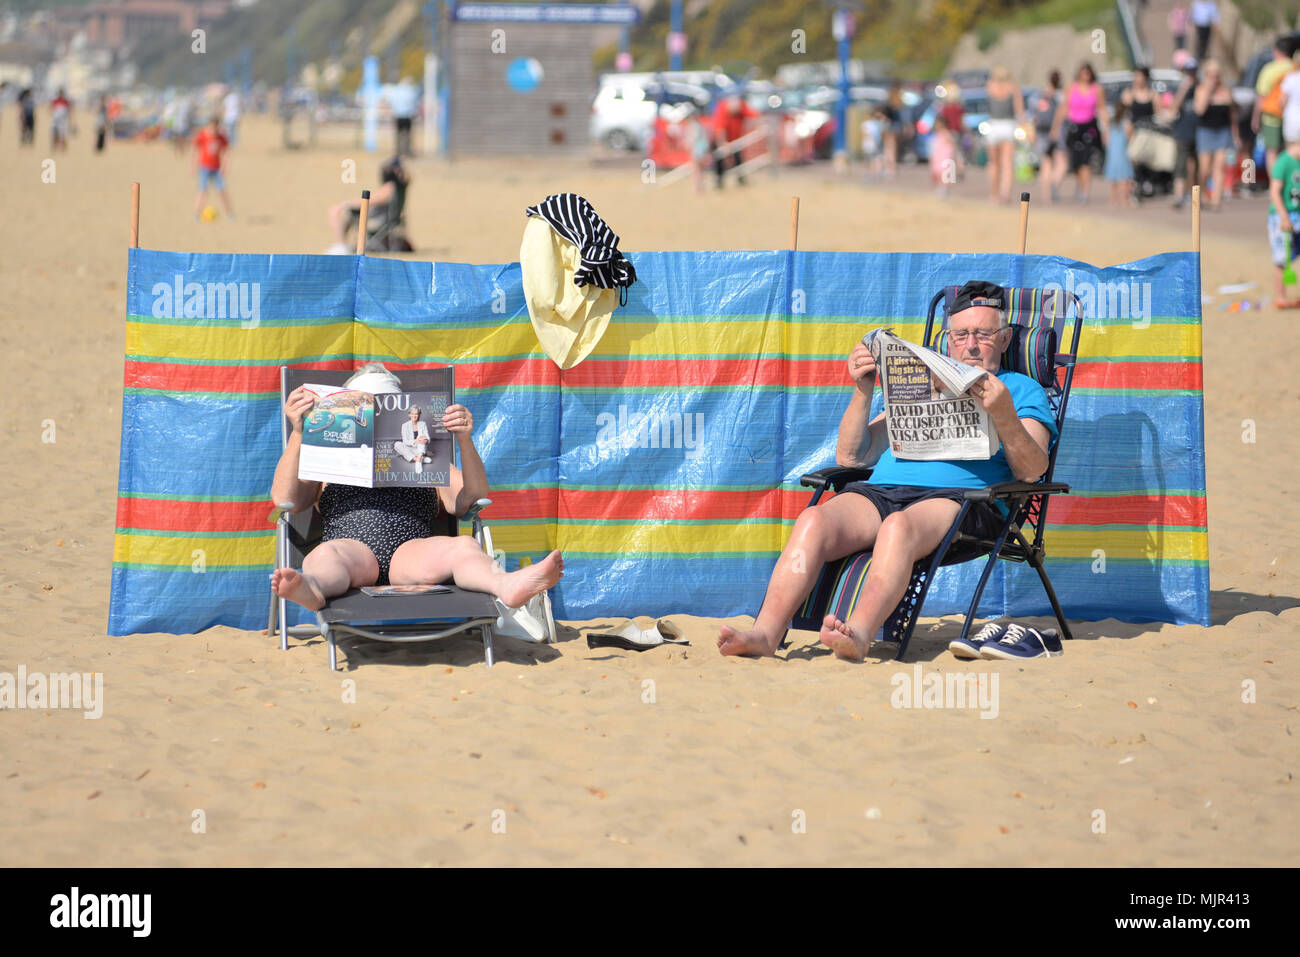 Boscombe, Bournemouth, Dorset, UK, 6. Mai 2018: Paare sitzen auf Stühlen mit ihren Füßen bis Zeitung lesen und entspannen am Strand in der heißen Sonne vom Wind Pause geschützt. Heißeste Mayday Bank Holiday Wochenende auf Aufzeichnung. Alamy Nachrichten Stockfoto